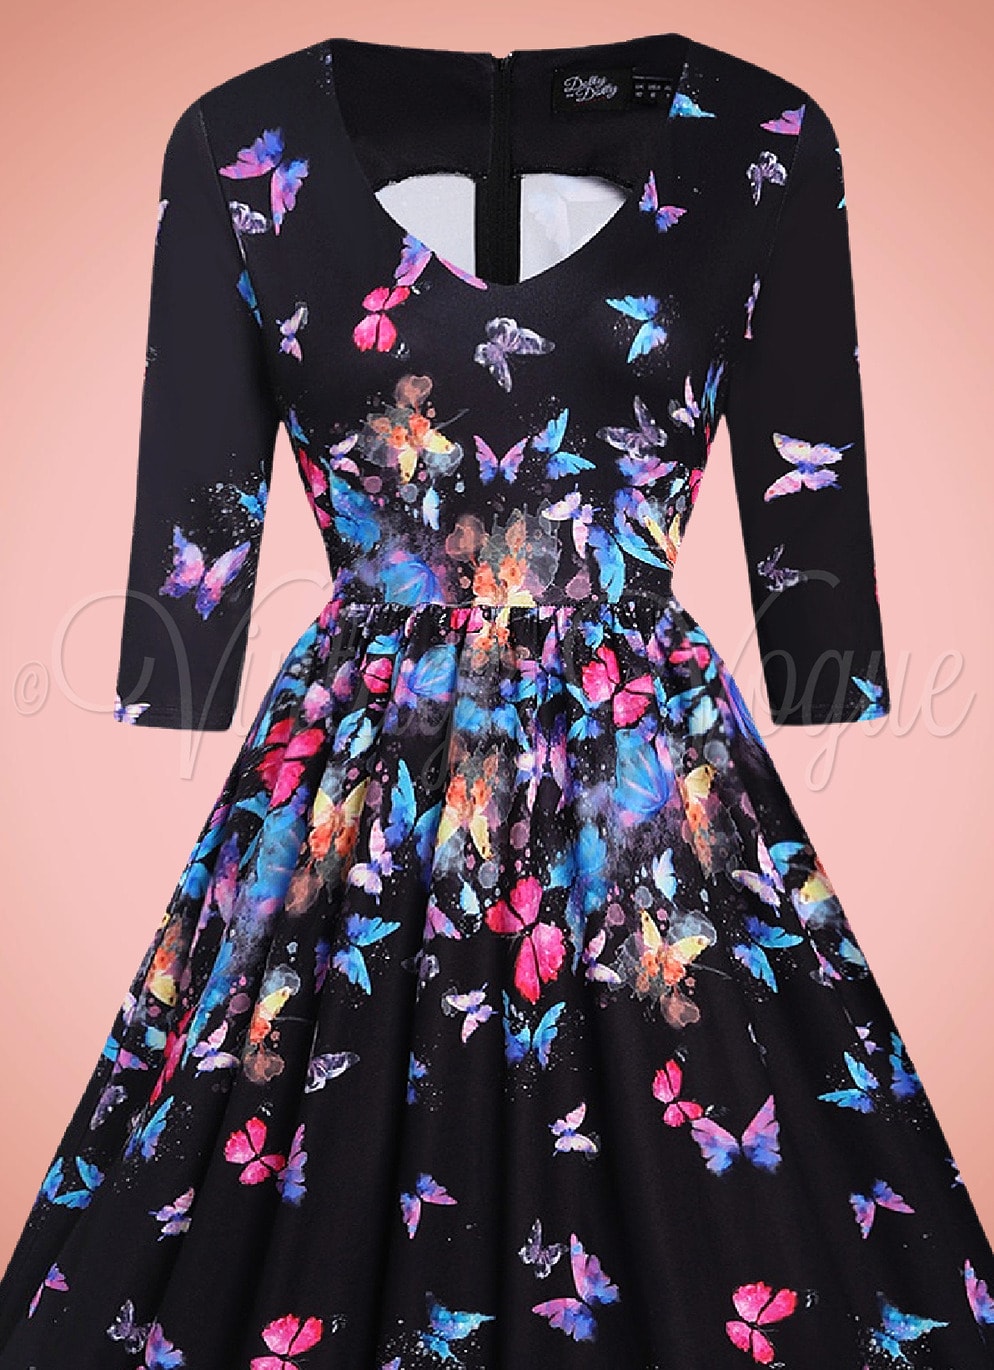 Dolly and Dotty 50's Vintage Schmetterlinge Swing Kleid Billie Butterfly in Schwarz Bunt 50er Jahre Petticoat Damenkleid Geblümt Sommerkleid Hochzeitsgast